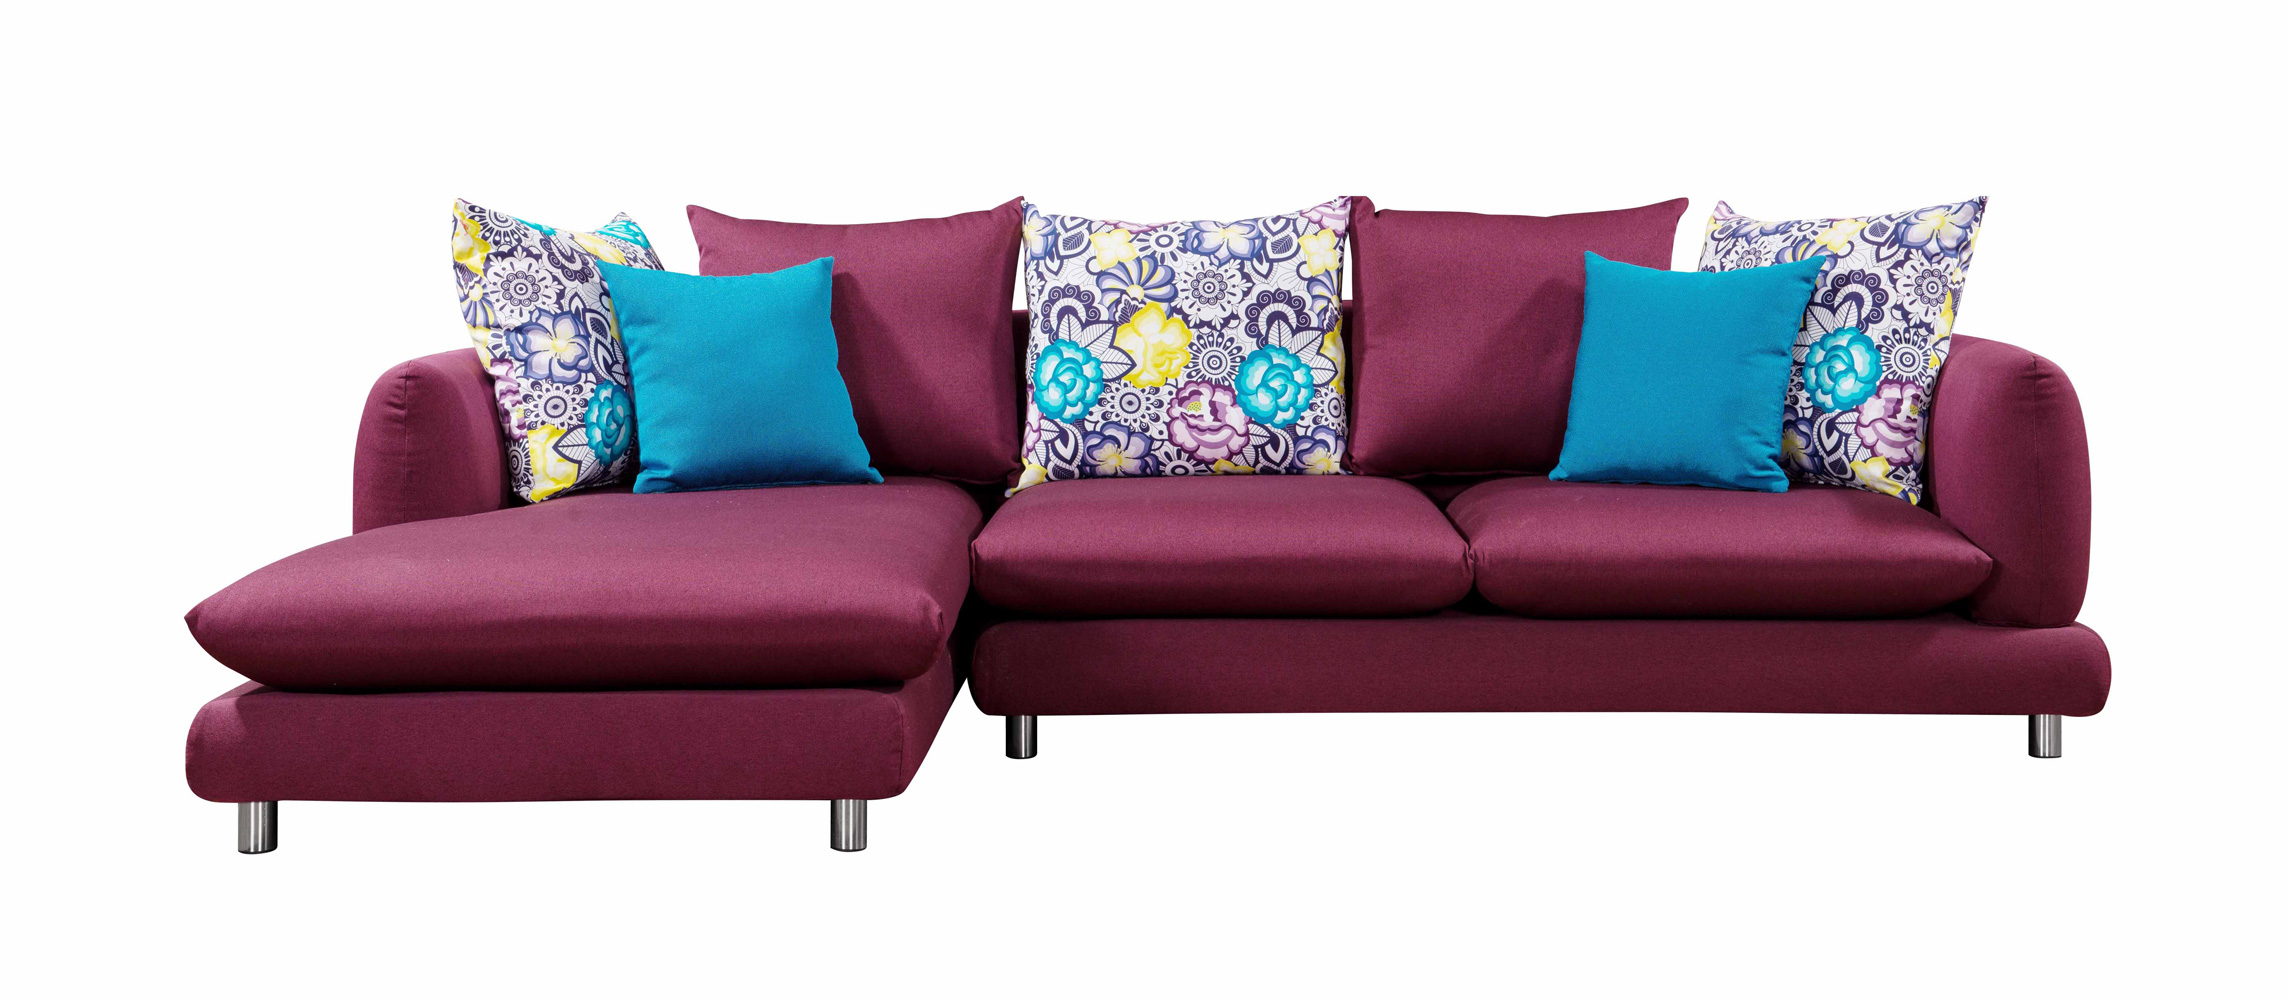 尚然格林简约现代棉麻布紫色布艺沙发